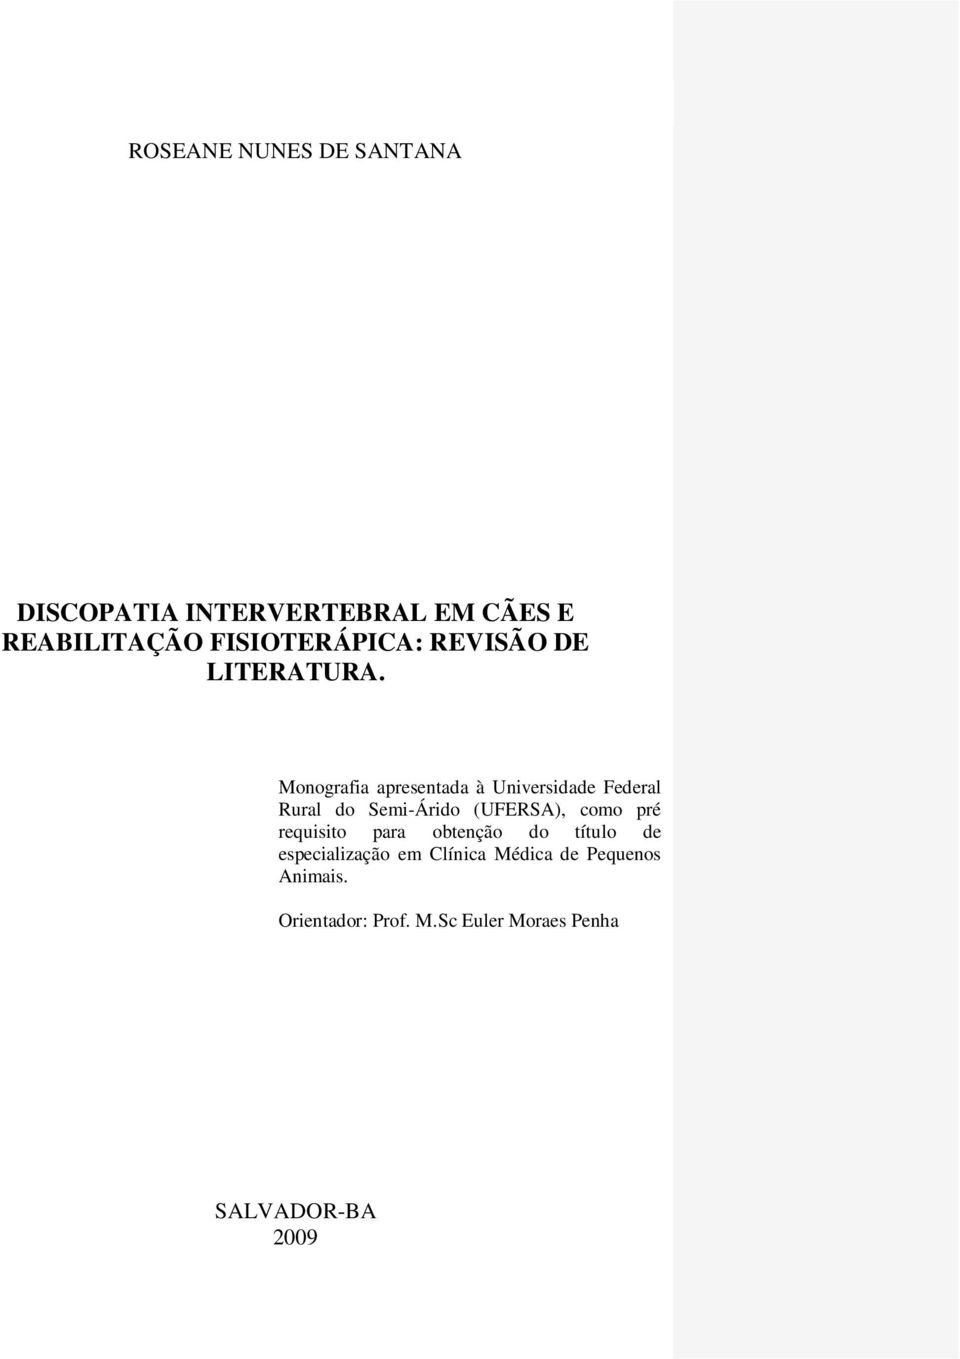 Monografia apresentada à Universidade Federal Rural do Semi-Árido (UFERSA), como pré